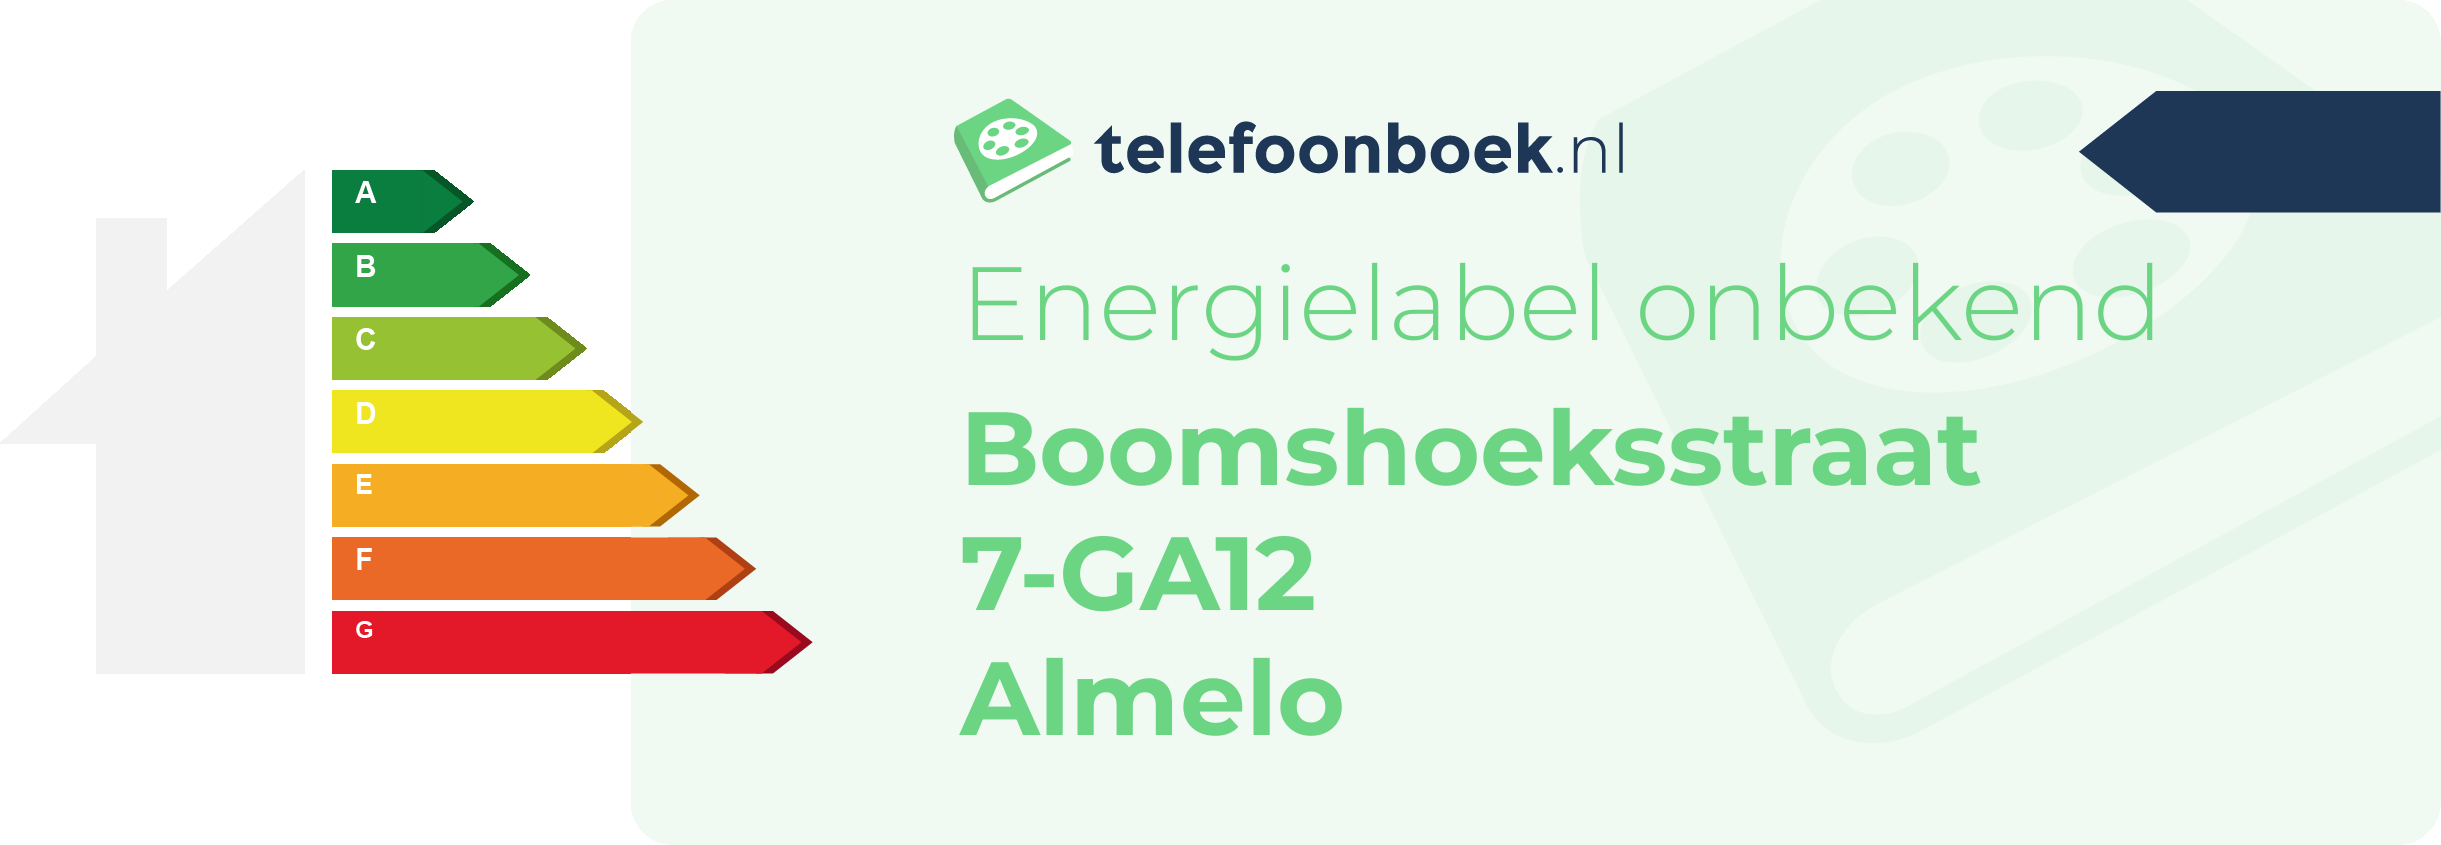 Energielabel Boomshoeksstraat 7-GA12 Almelo